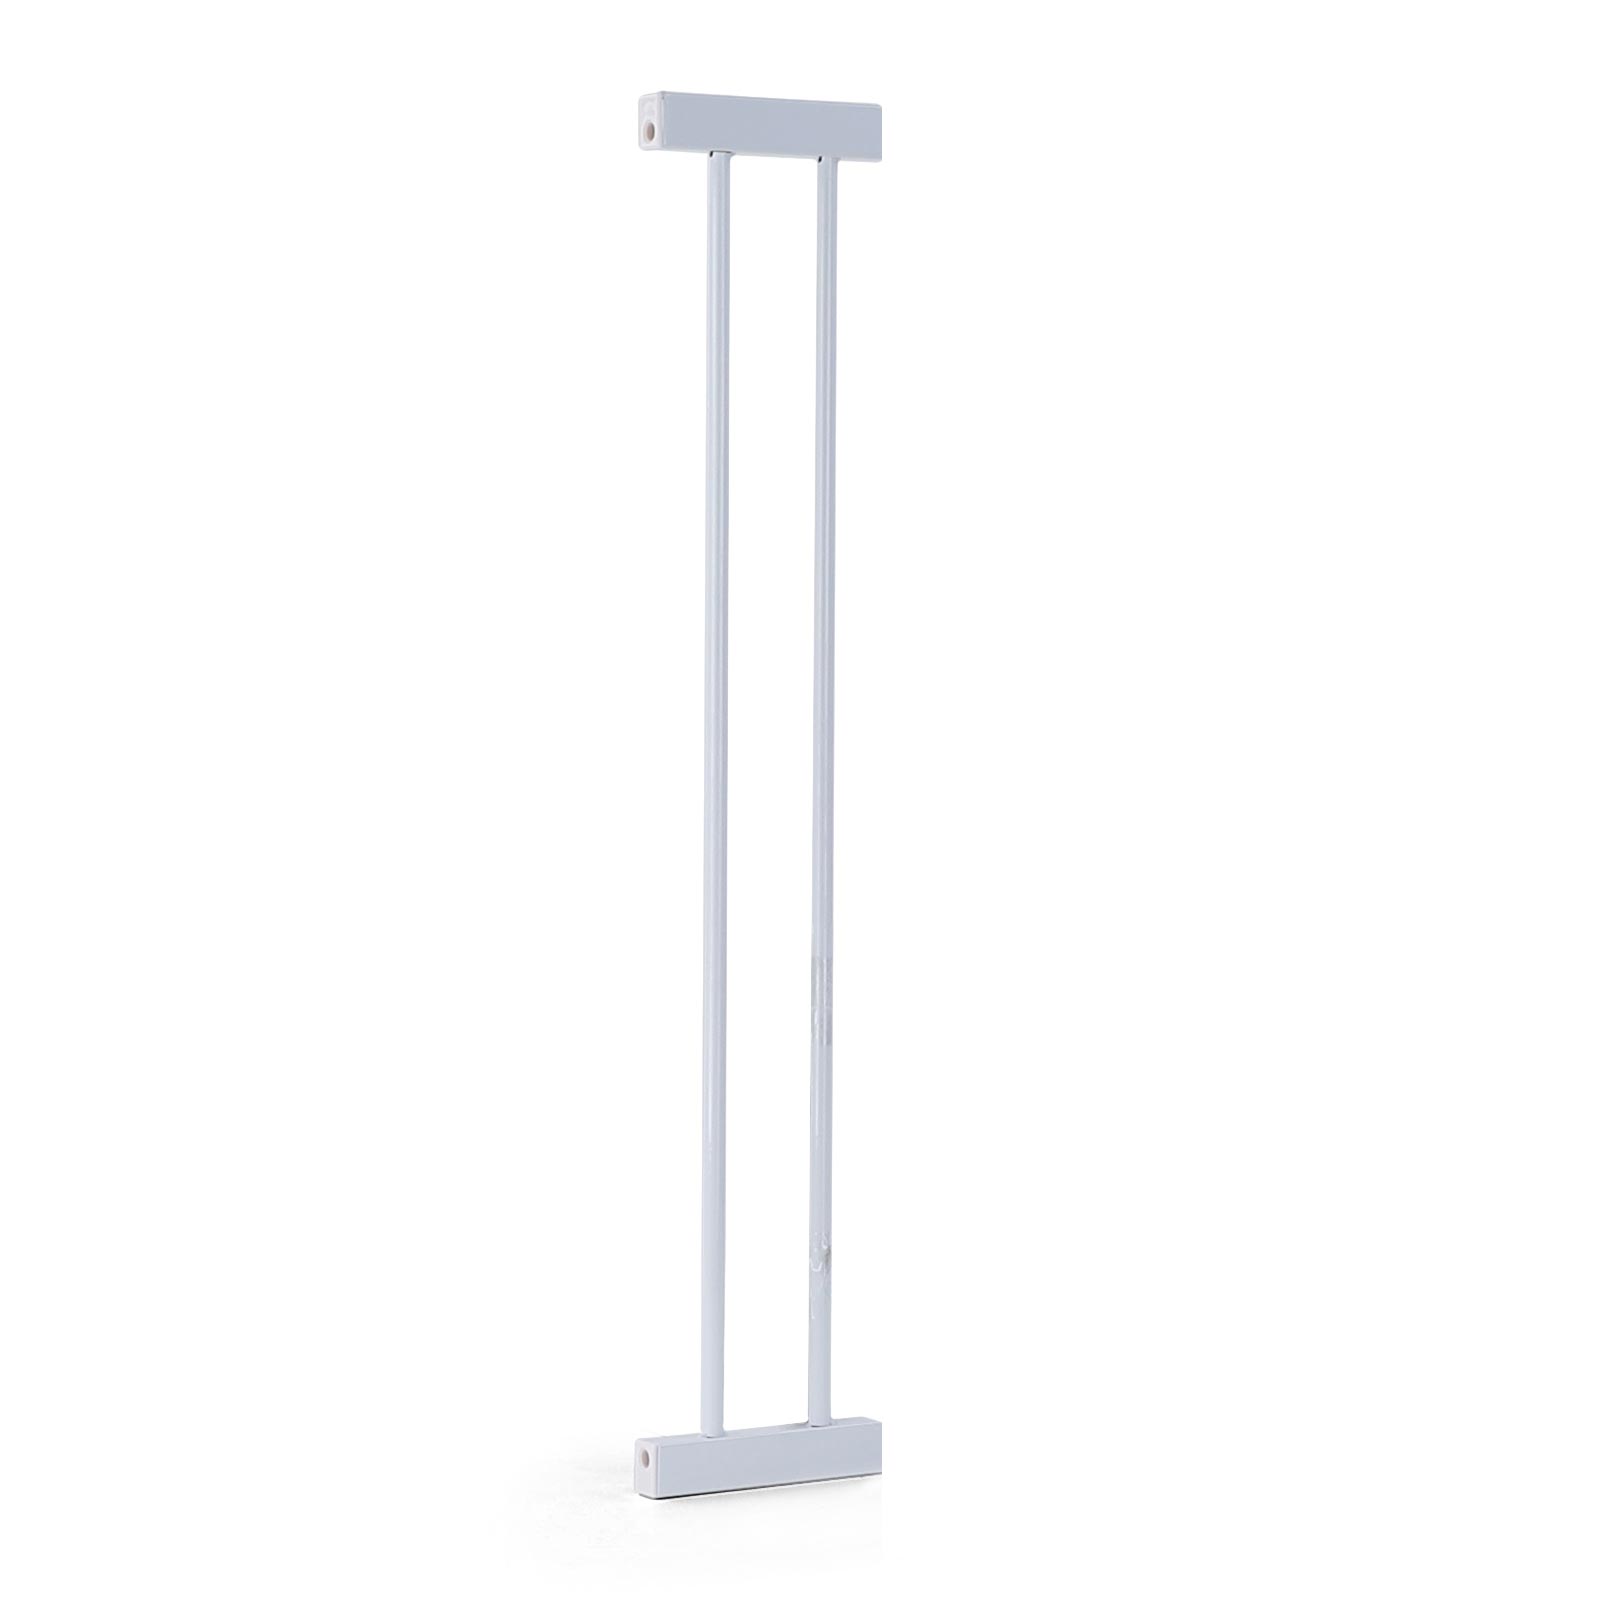 Rampe 87-100cm  77cm hoch Absperrgitter Treppenschutzgitter Metall weiß 